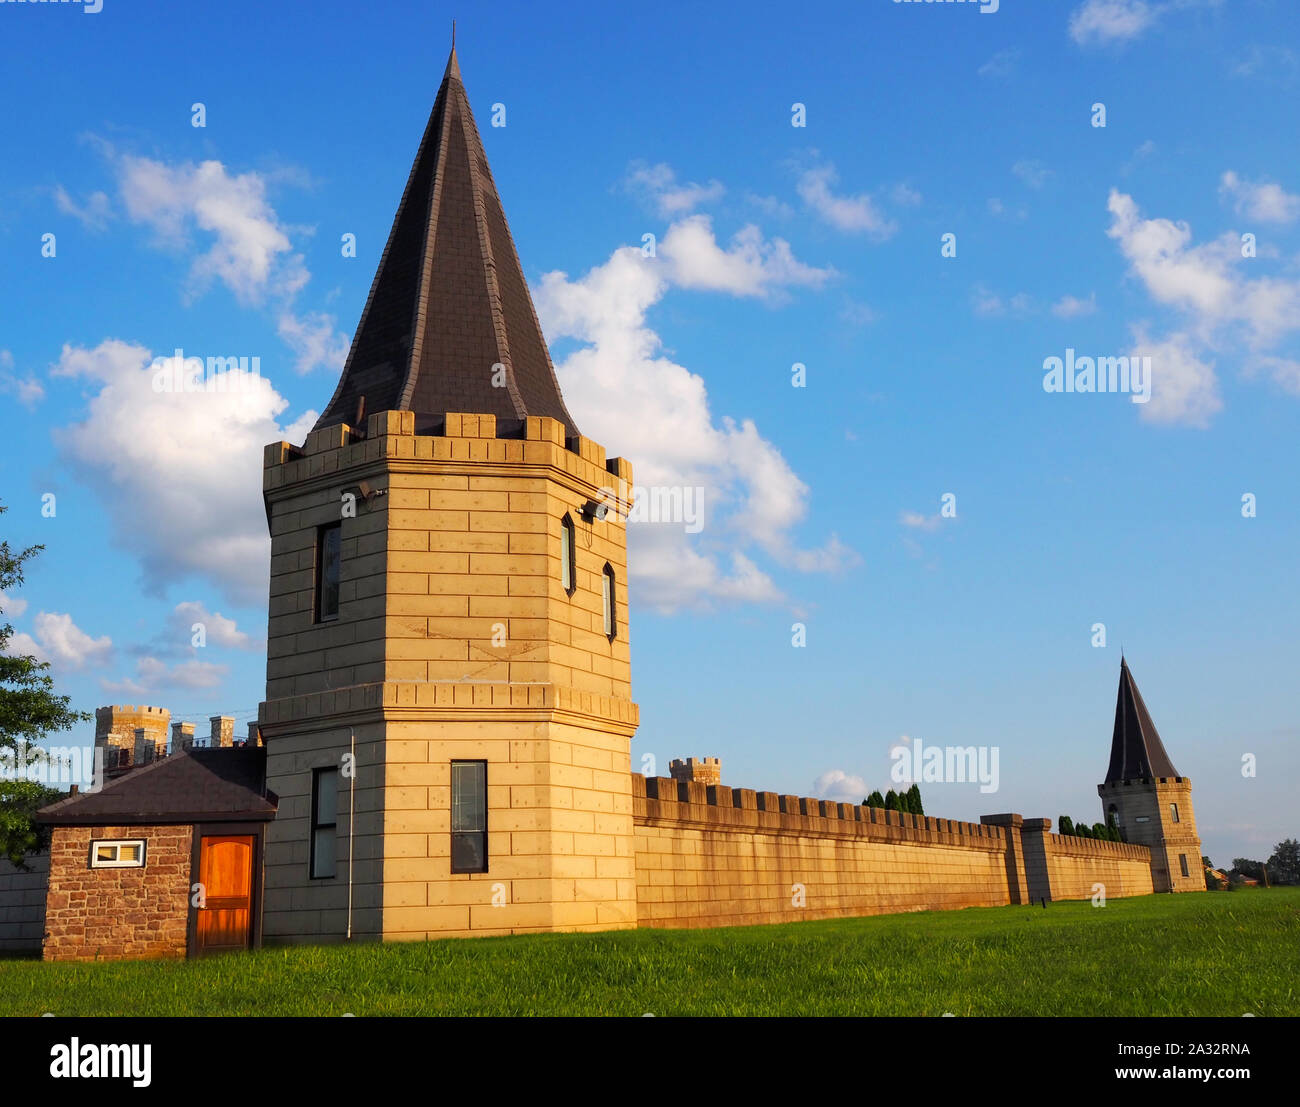 Une tourelle marque le coin de grand château immense dans l'arrière-plan entouré d'herbe verte et d'un ciel bleu avec des nuages filandreux. Banque D'Images